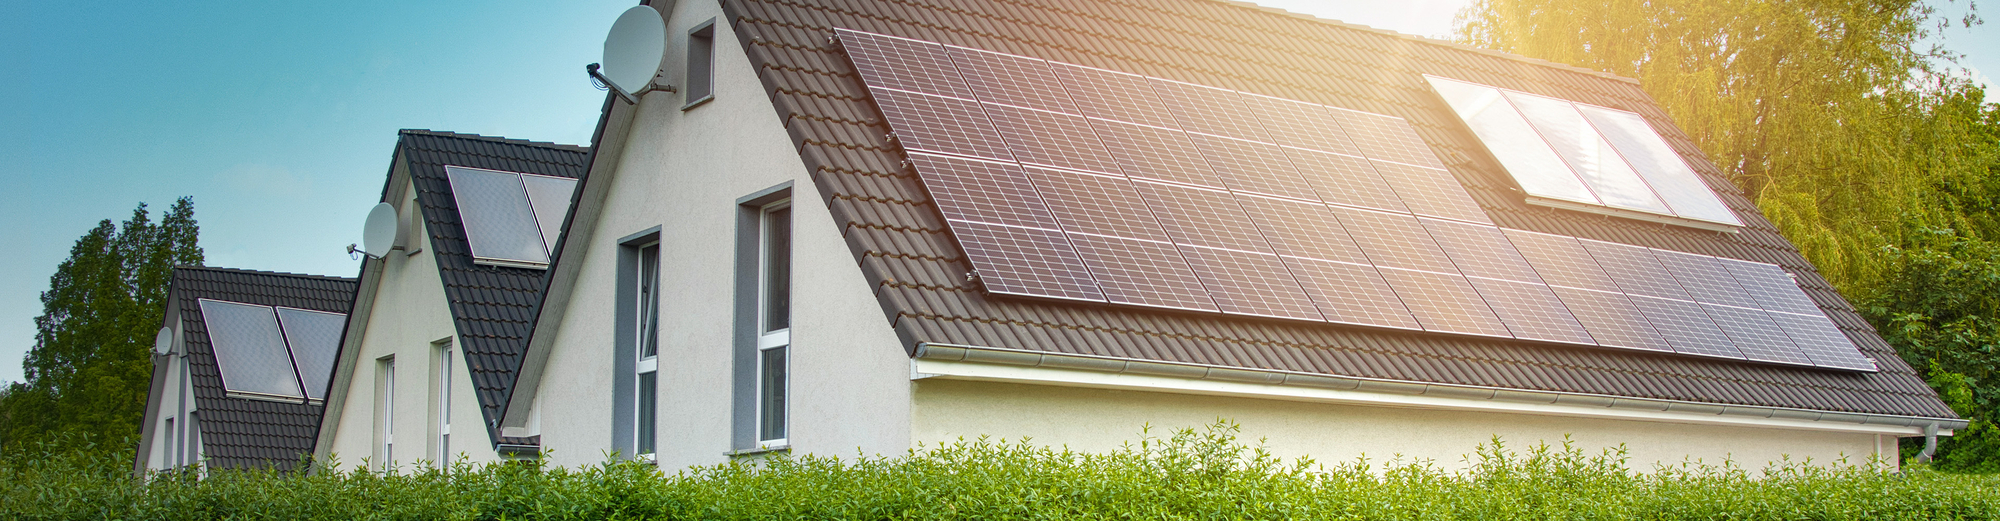 Photovoltaik und Solarthermie ☼ für Neubau und Altbau